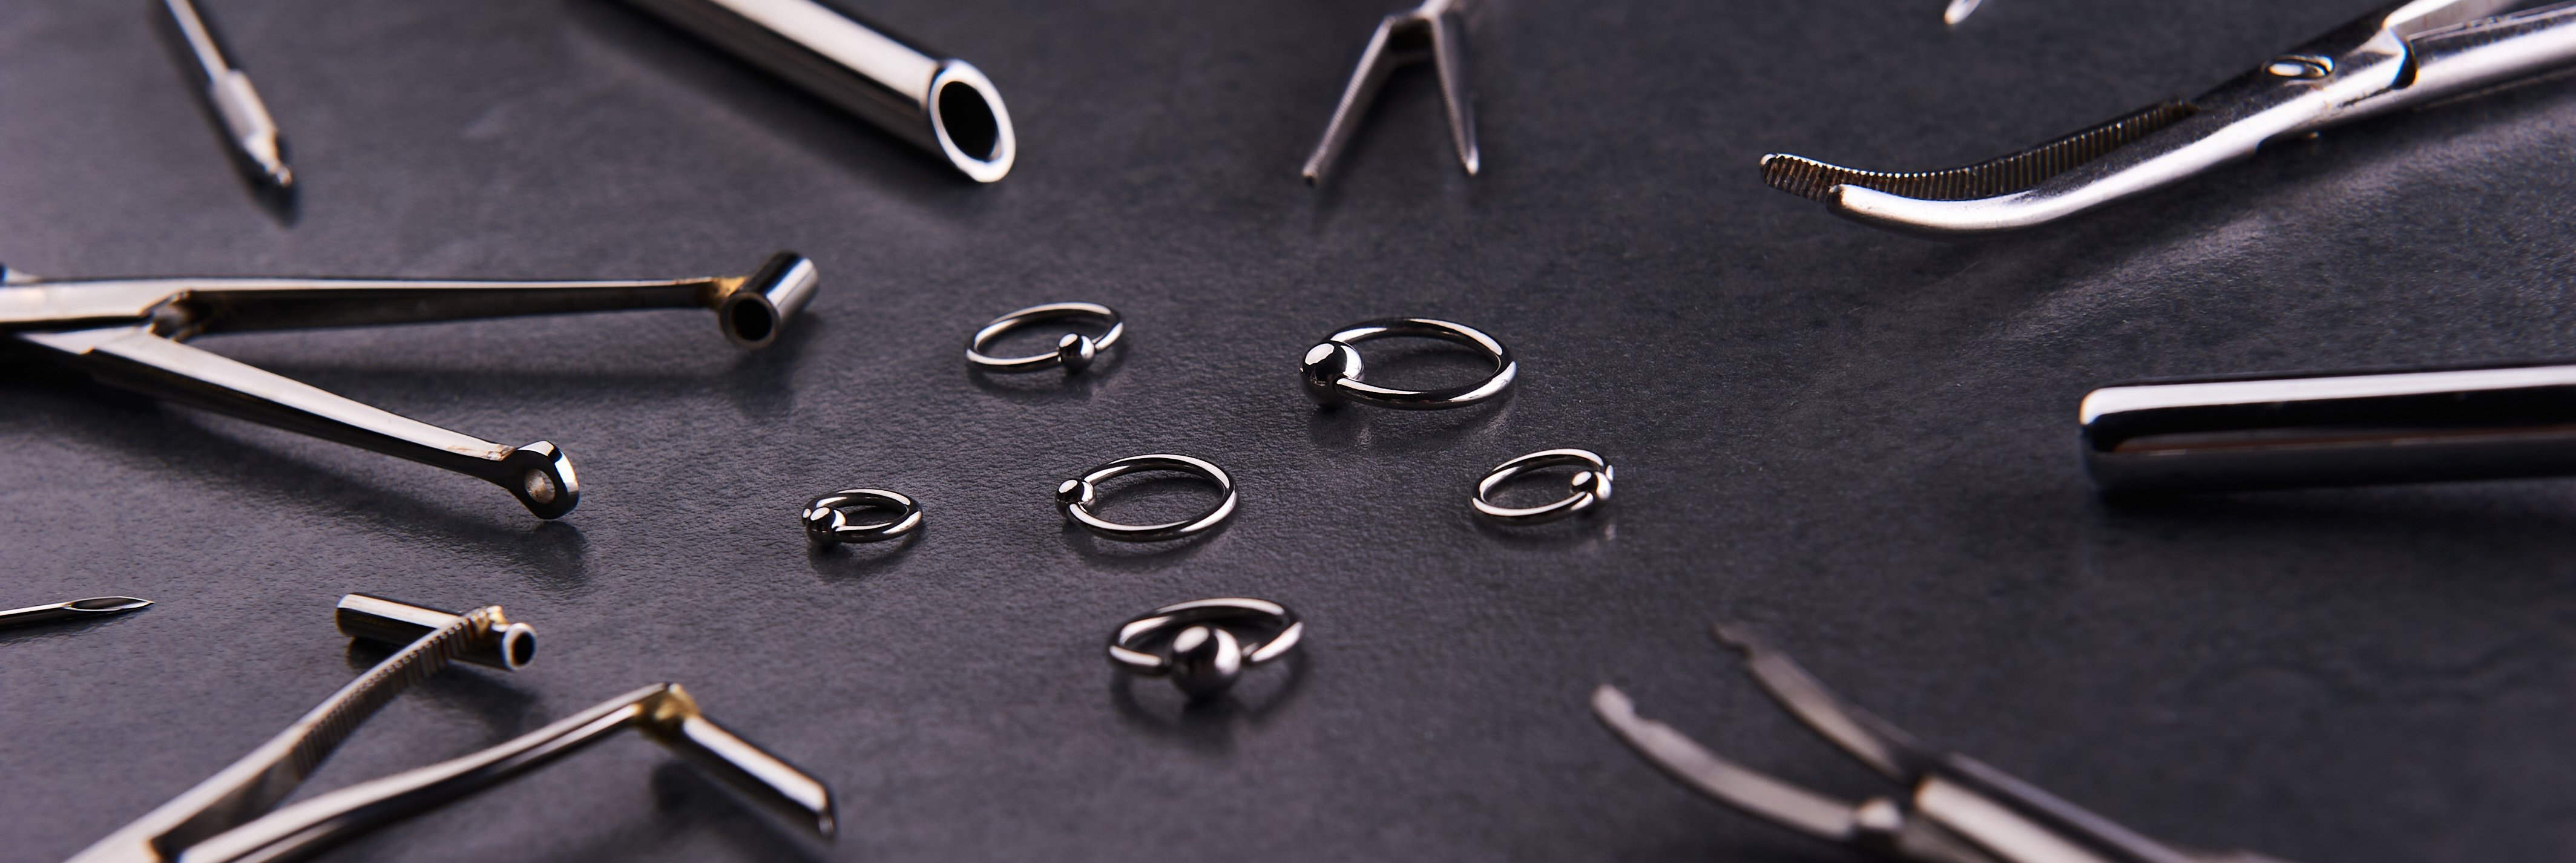 Piercing-Instrument, Clips, die neben Ohrringe auf schwarzem Hintergrund liegen. | Foto von: Sychov Serhii via Shutterstock